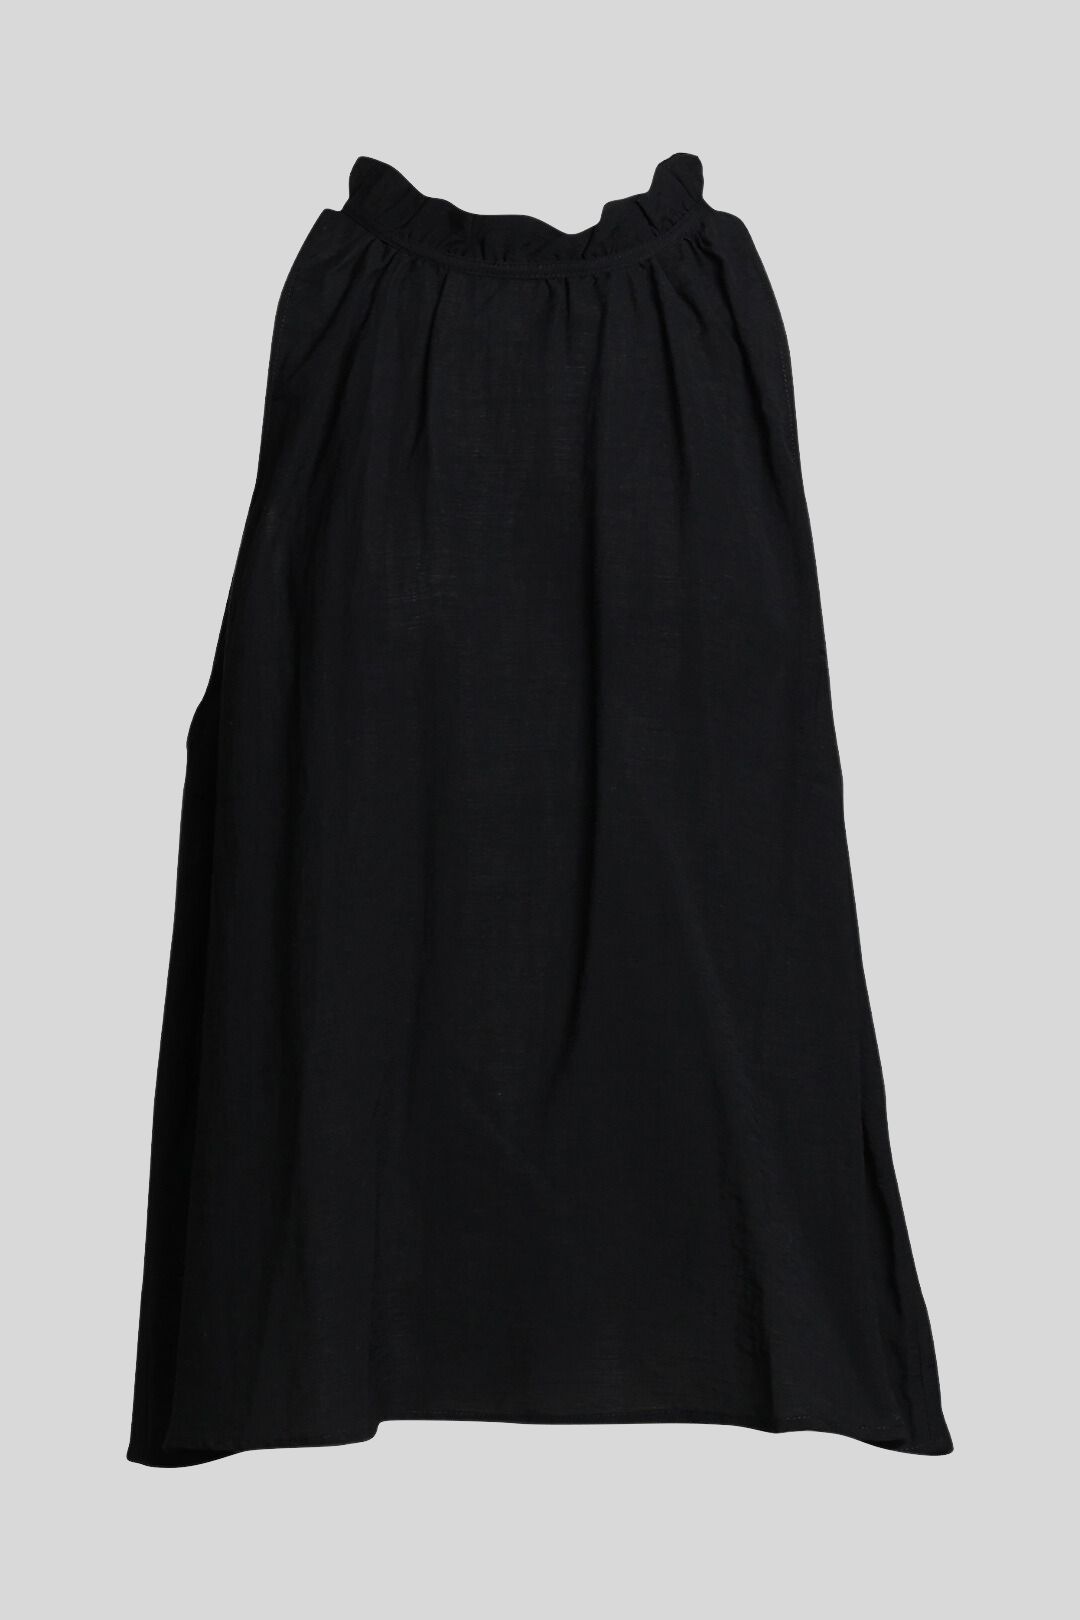 Buy Black Ruffled Neck Sleeveless Top | Veronika Maine | GlamCorner